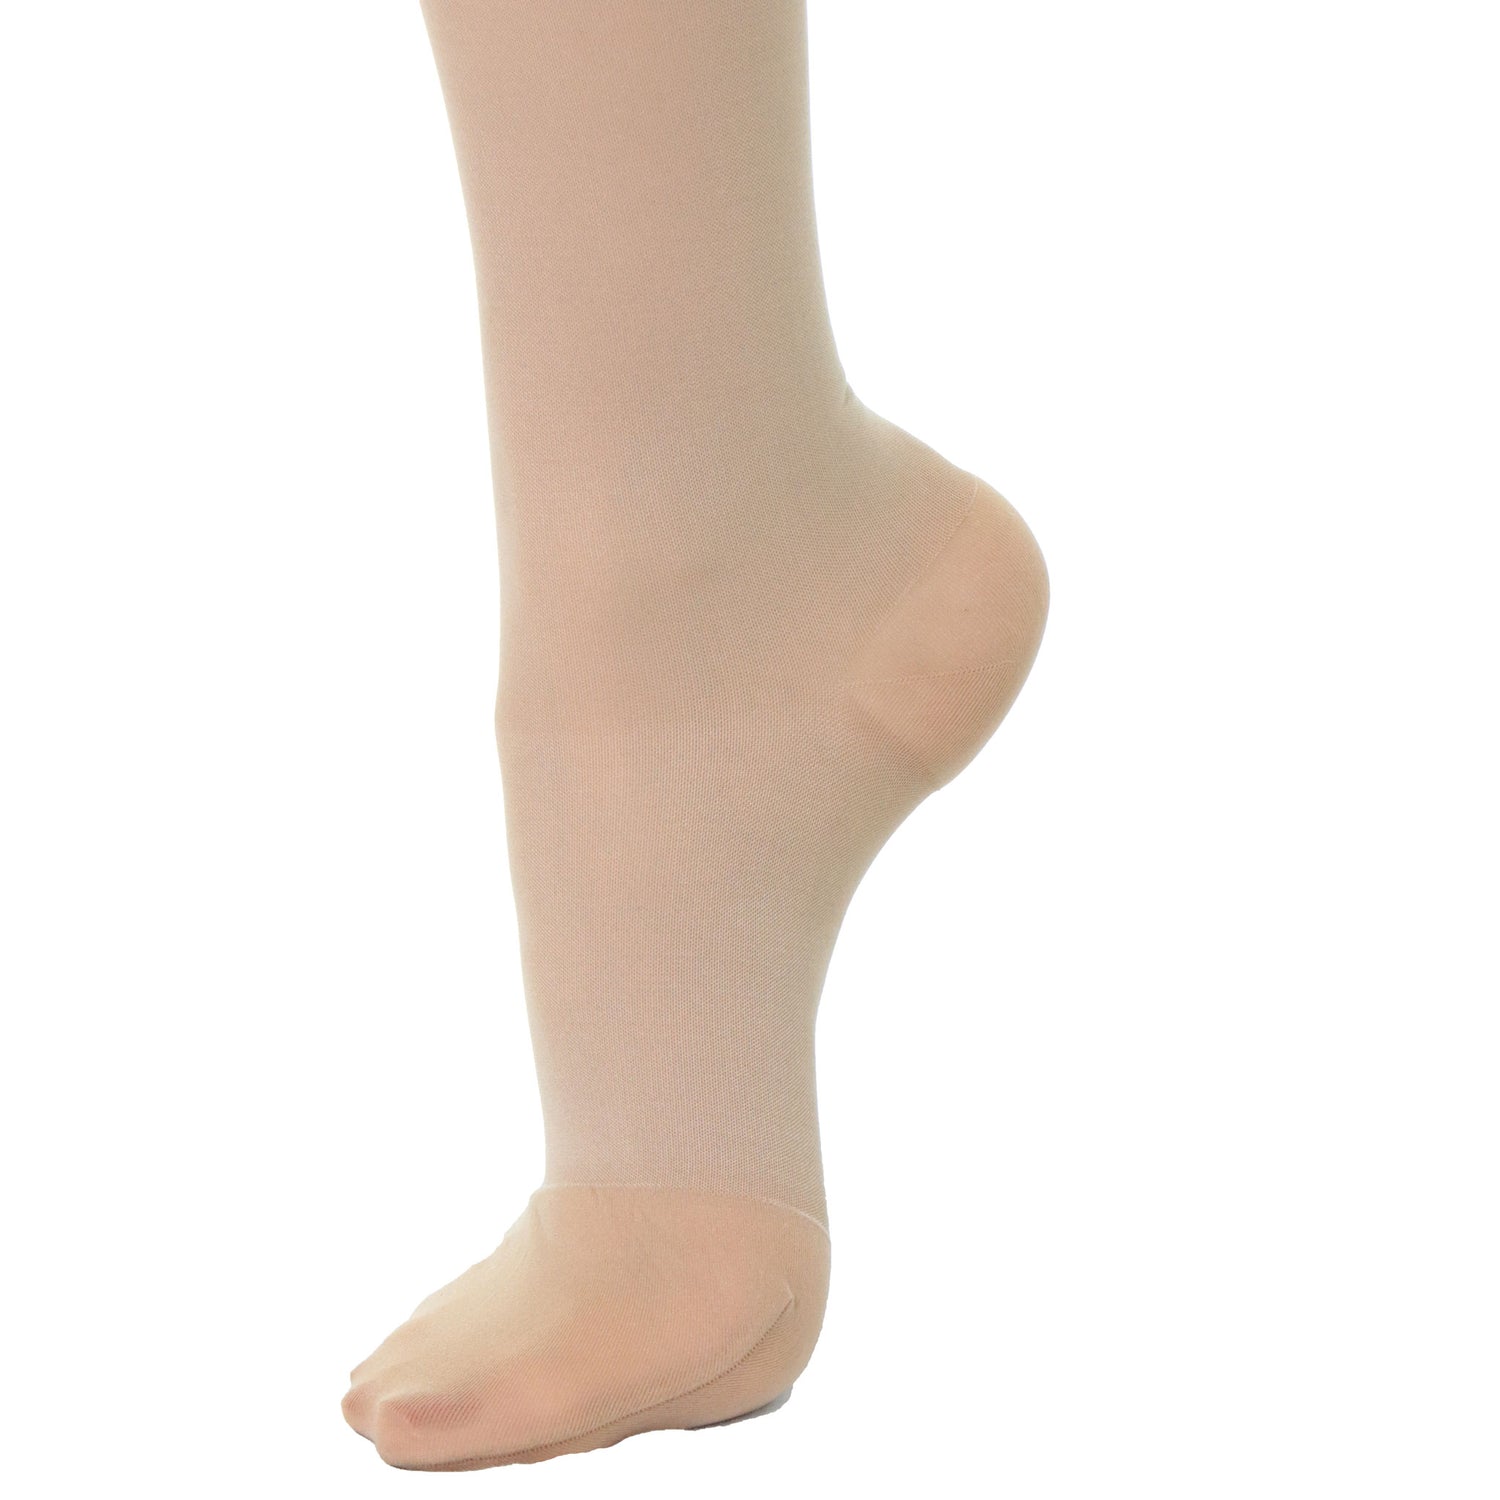 https://doctorbrace.com/cdn/shop/products/doctor-brace-women-compression-socks-knee-20-30-beige-closed-toe-foot-view.jpg?v=1670967011&width=1500